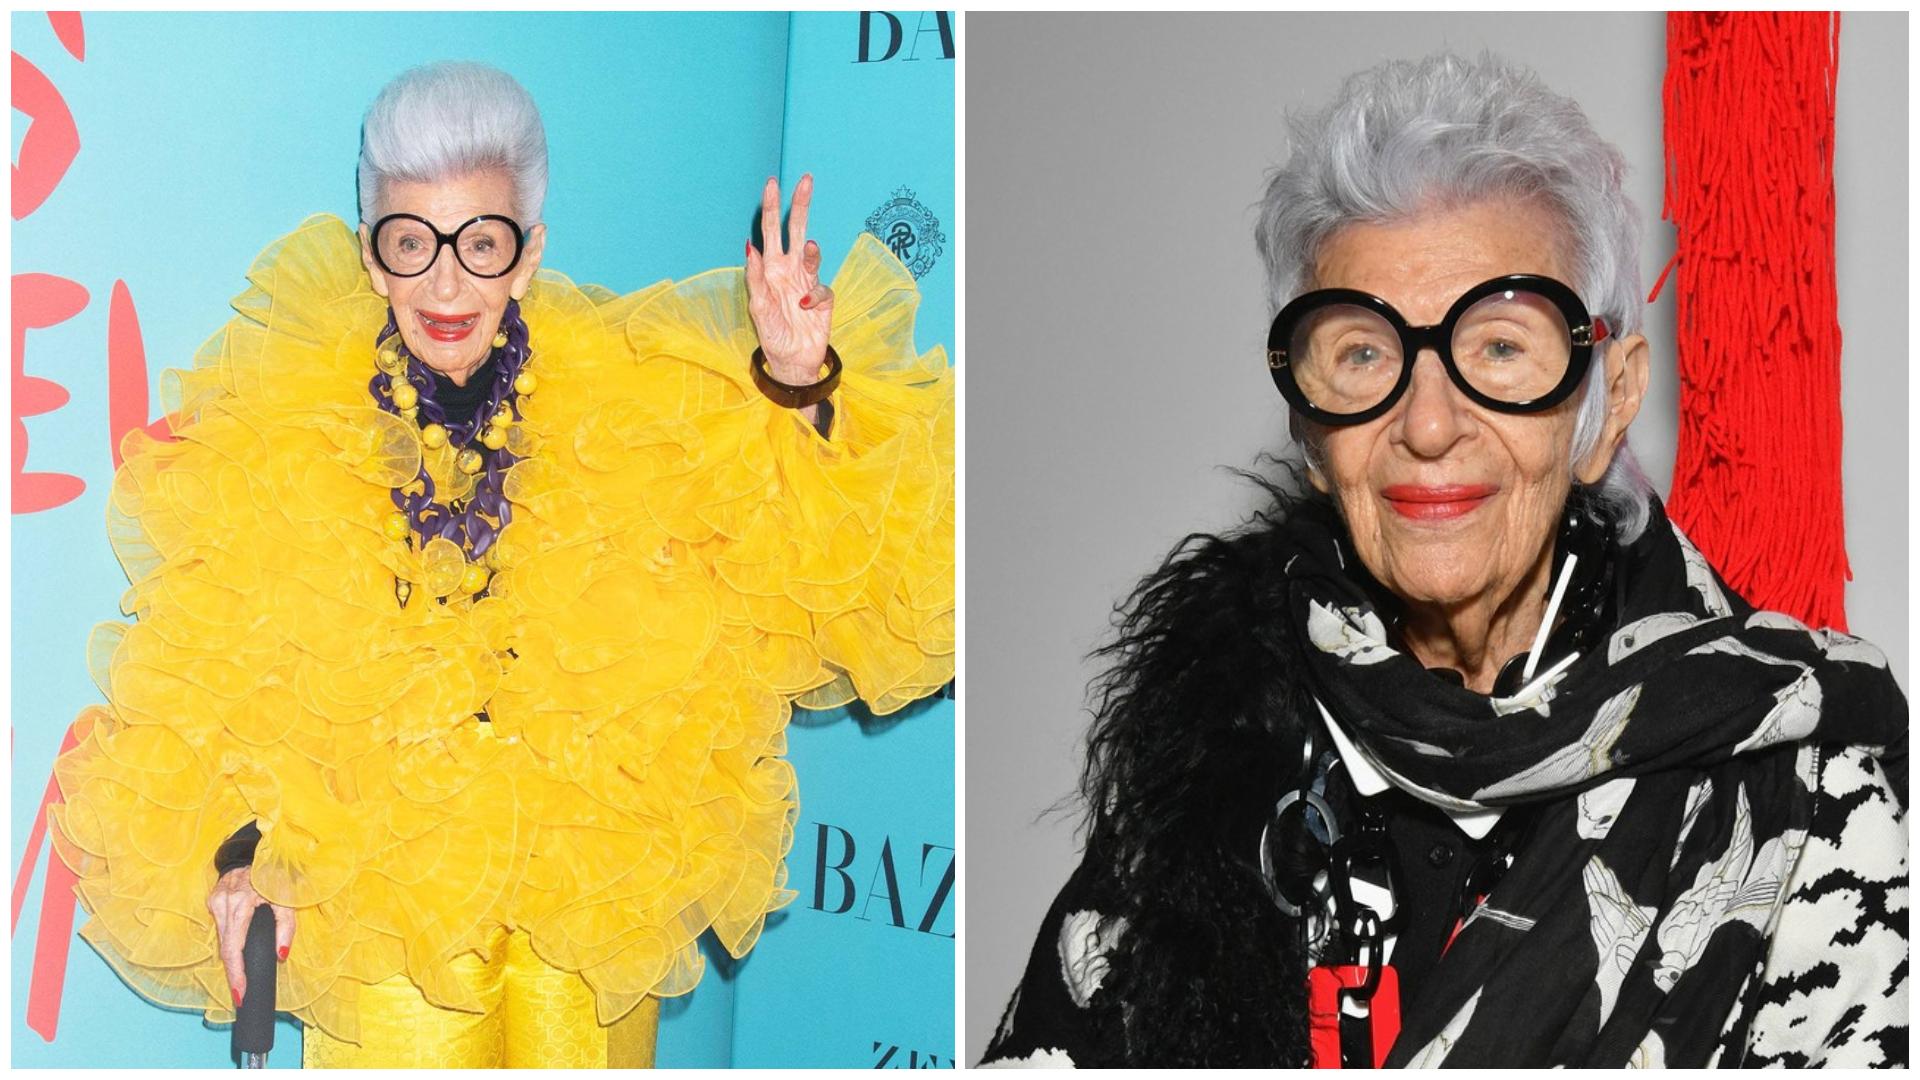 Iris Apfel, simbol al modei și „starletă geriatrică", a murit la vârsta de 102 ani. Cine a fost și cum a devenit celebră